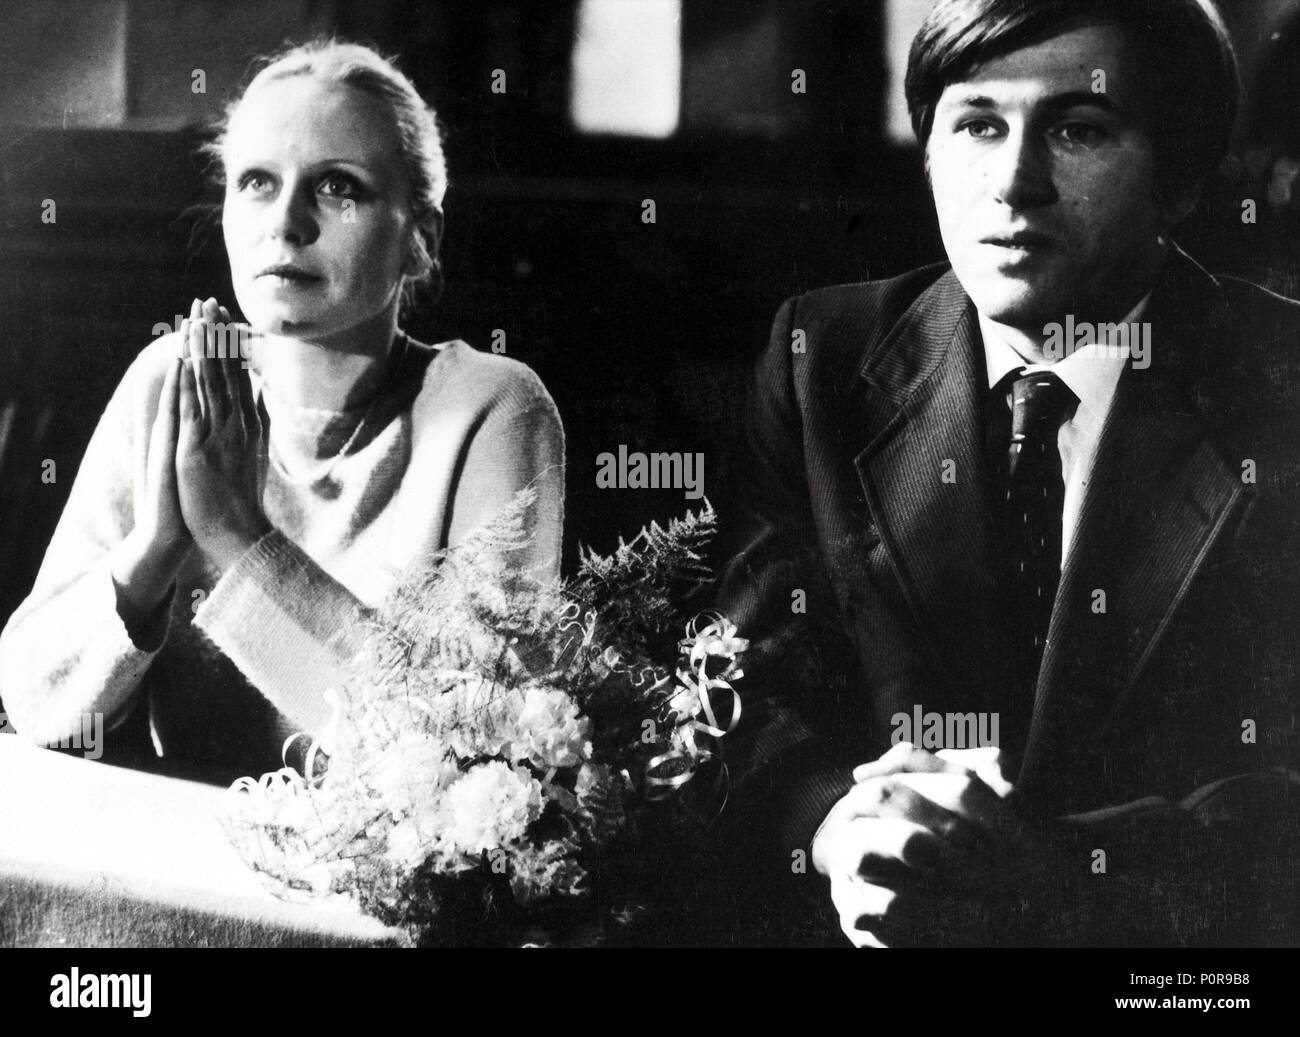 Original Film Title: CZLOWIEK Z ZELAZA.  English Title: MAN OF IRON.  Film Director: ANDRZEJ WAJDA.  Year: 1981.  Stars: JERZY RADZIWLOWICZ; KRYSTINA JANDA. Credit: FILM POLSKI / Album Stock Photo